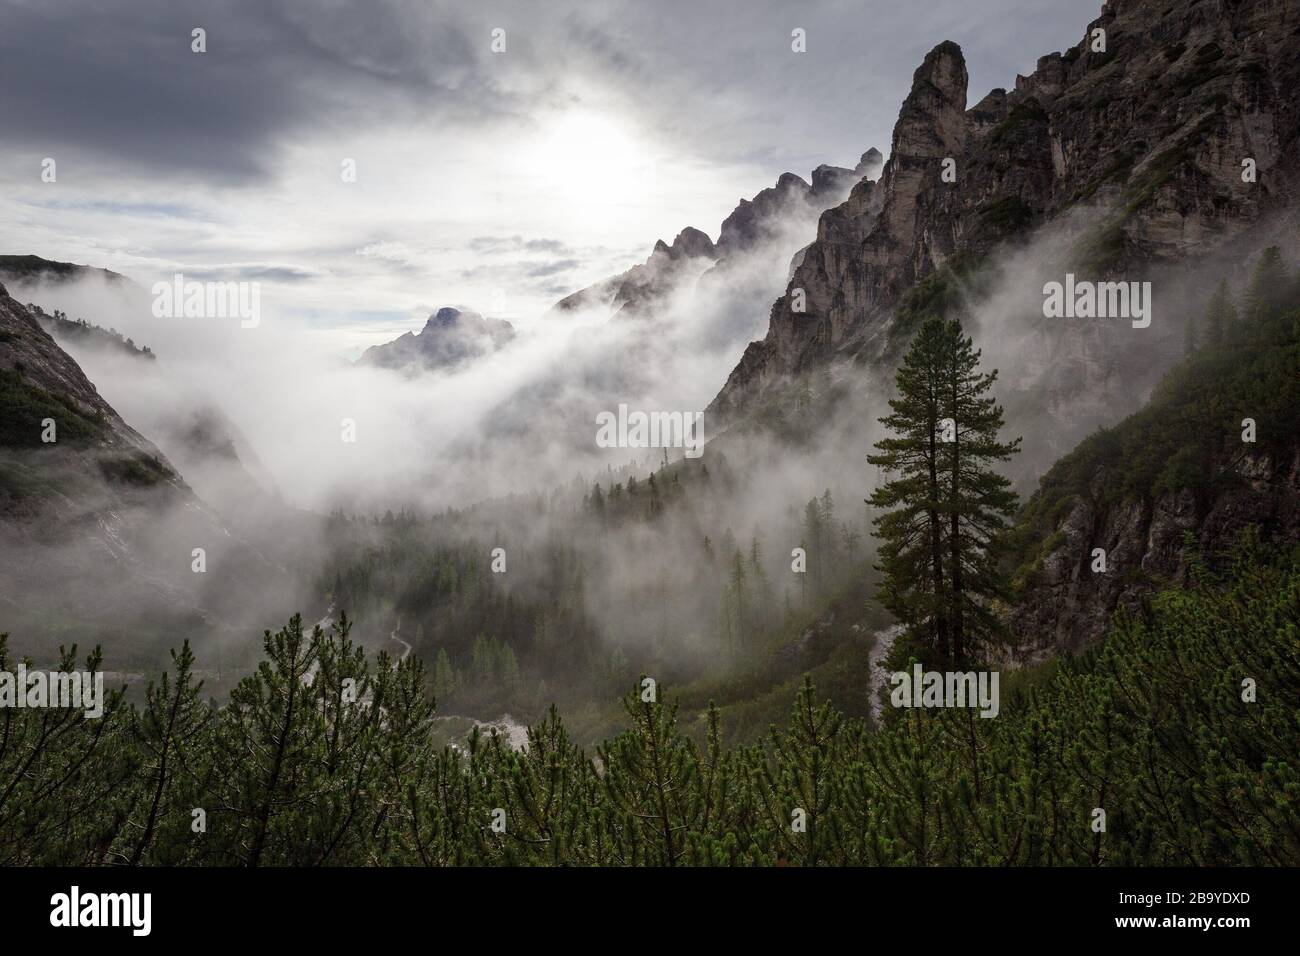 Contre-jour, le brouillard et les nuages sur la vallée alpine. Noir blanc paysage de montagne avec Pinus cembra arbre. Les Dolomites de Sexten. Alpes italiennes. L'Europe. Banque D'Images